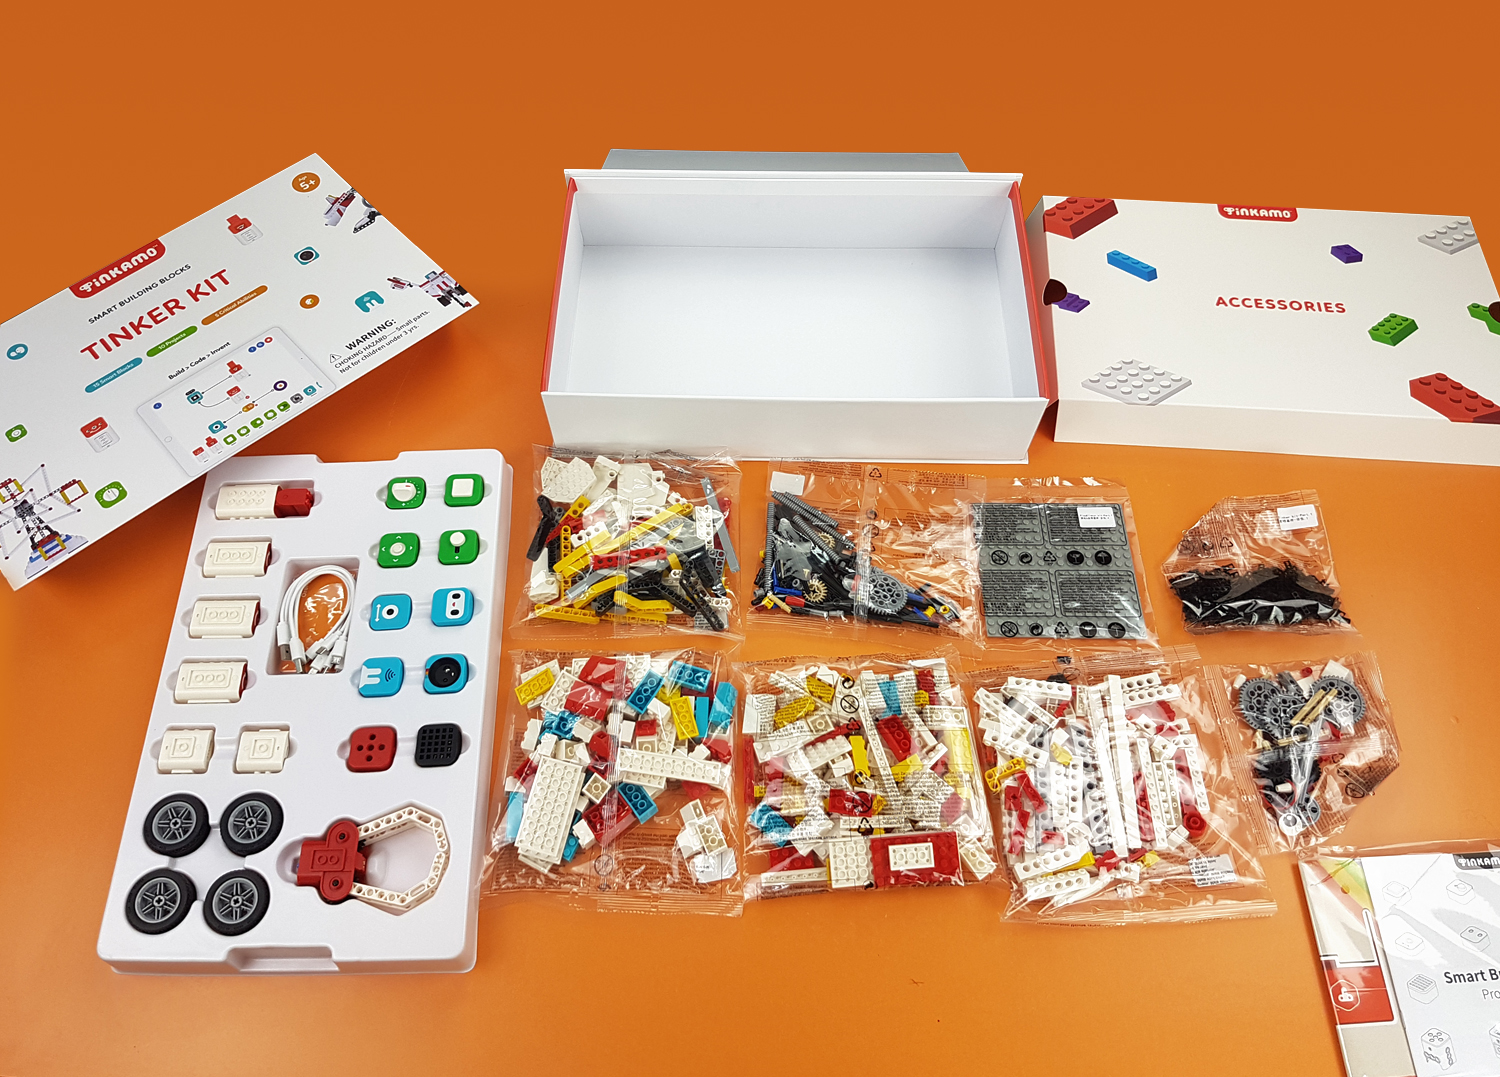 Базовый робототехнический набор Tinker Kit (Расширенный) арт.4567812